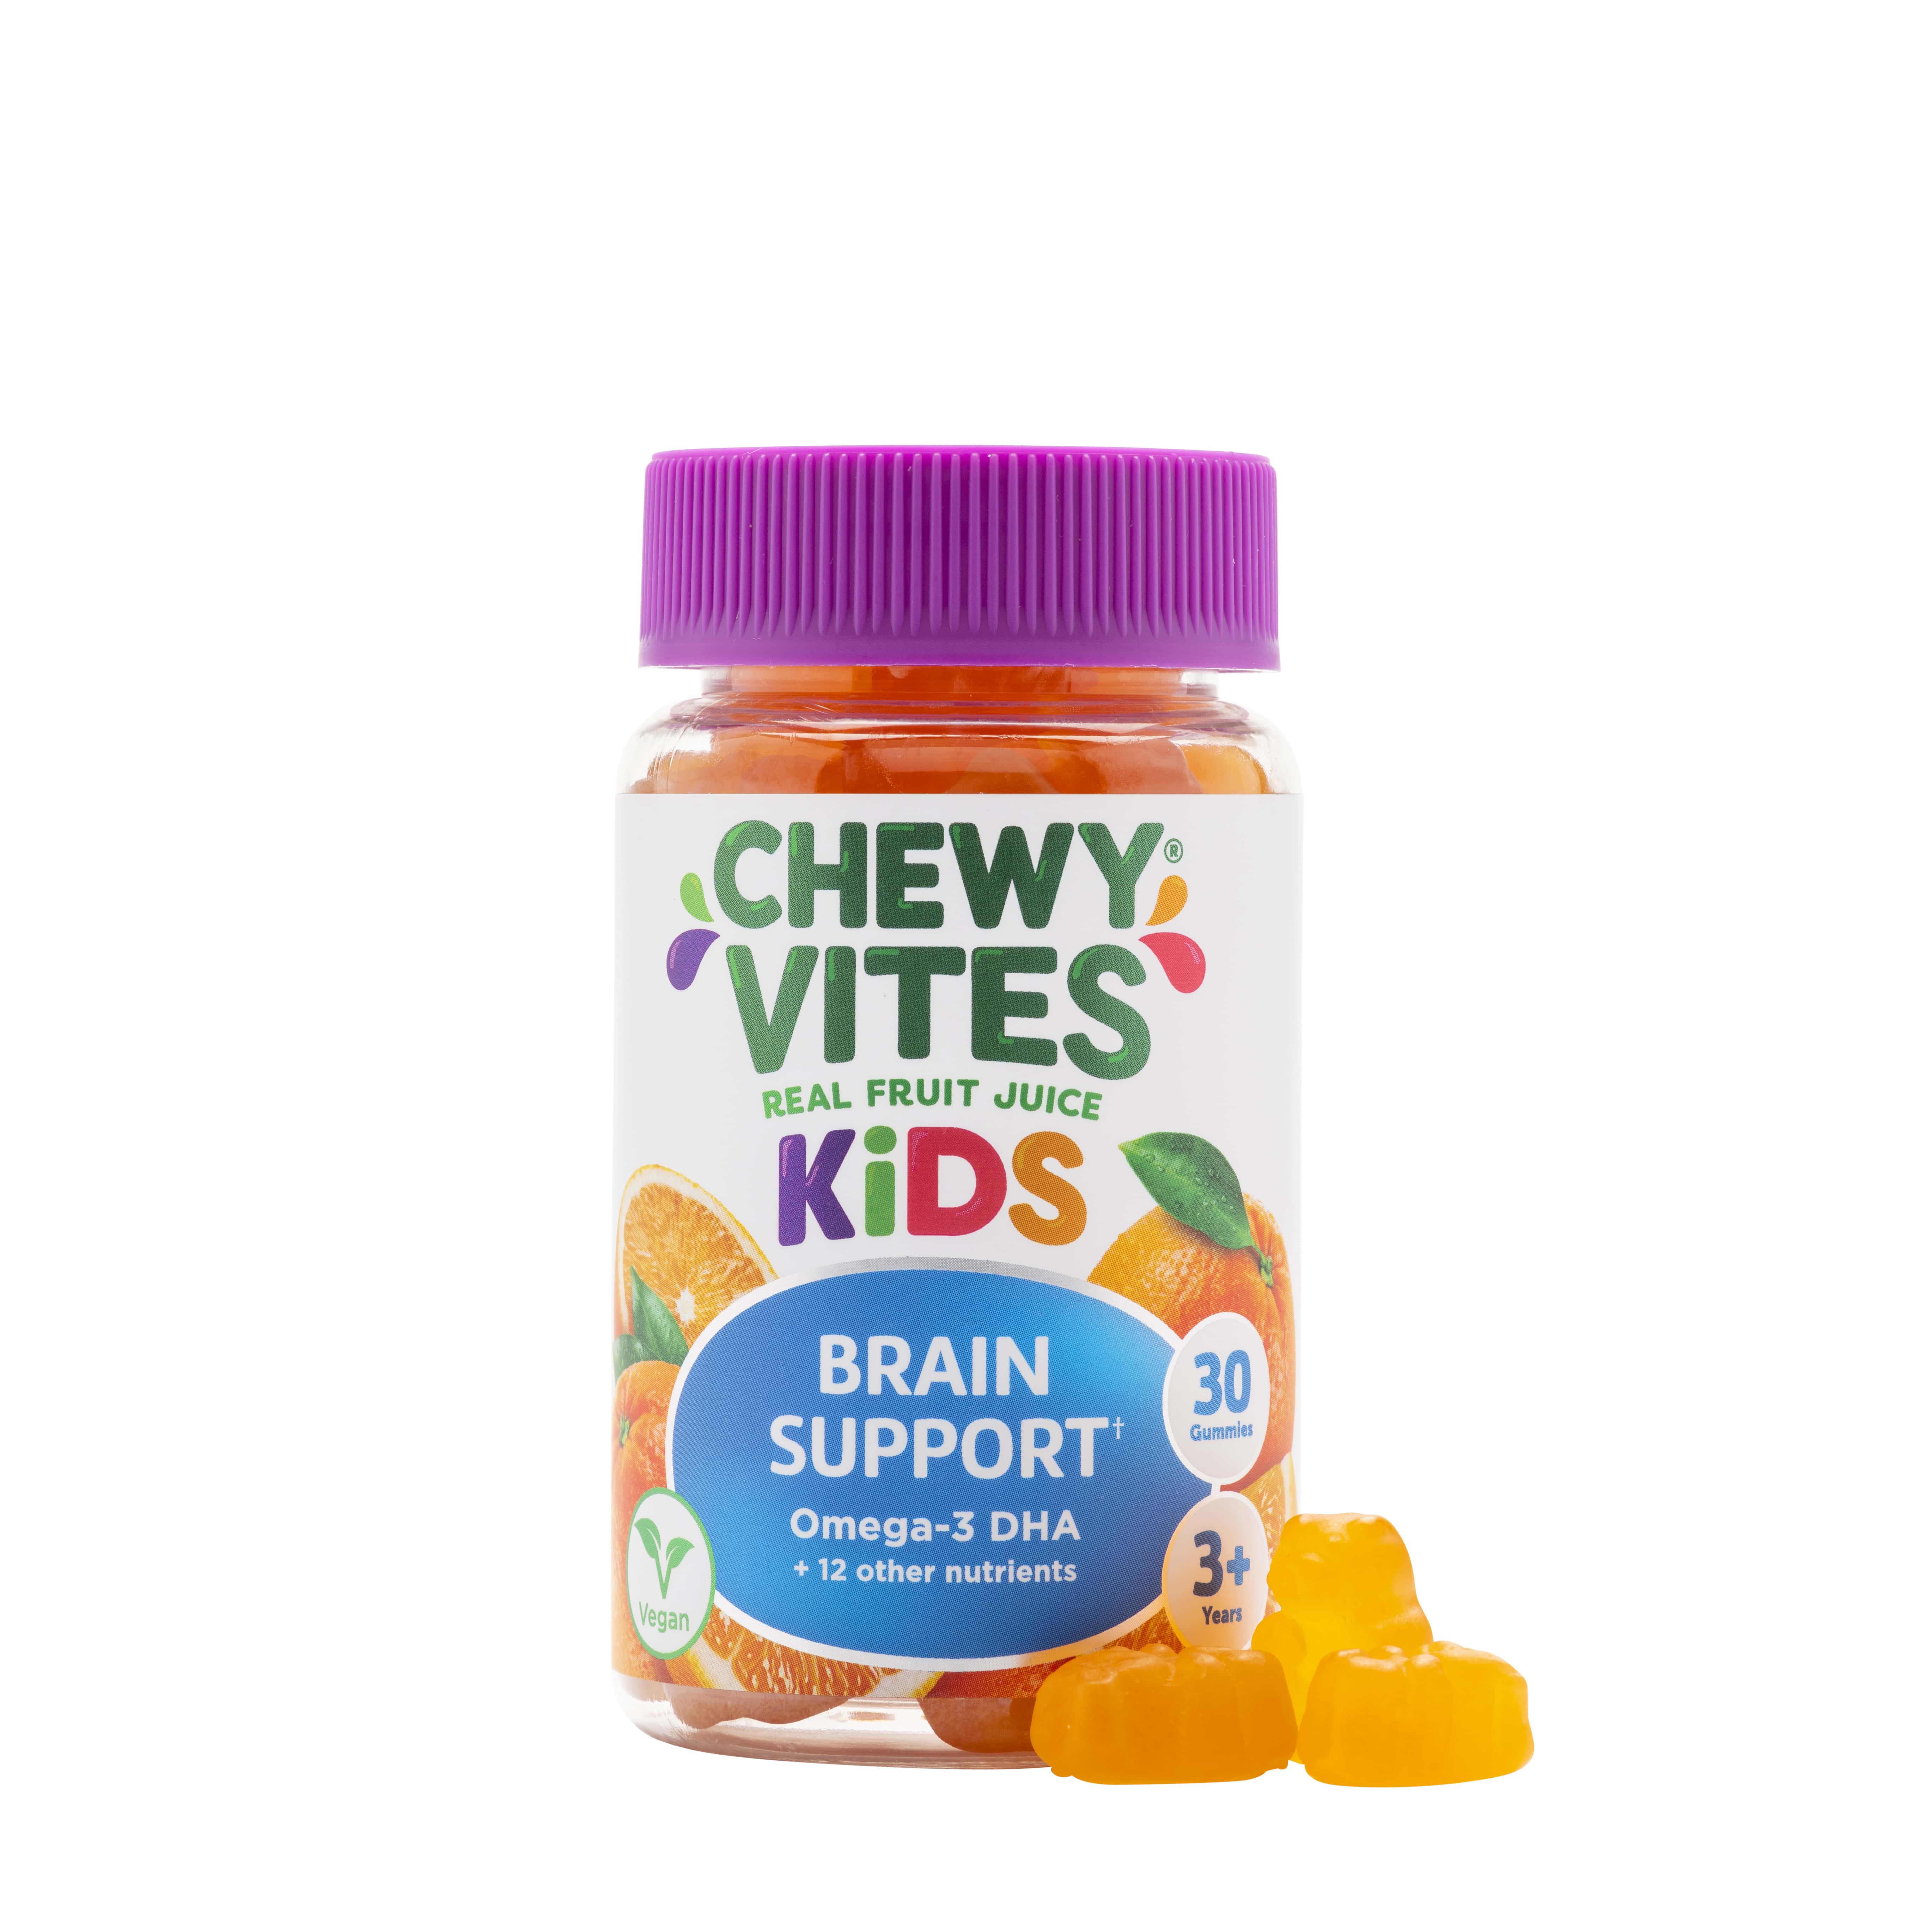 Kids Brain Support Omega 3 - 2